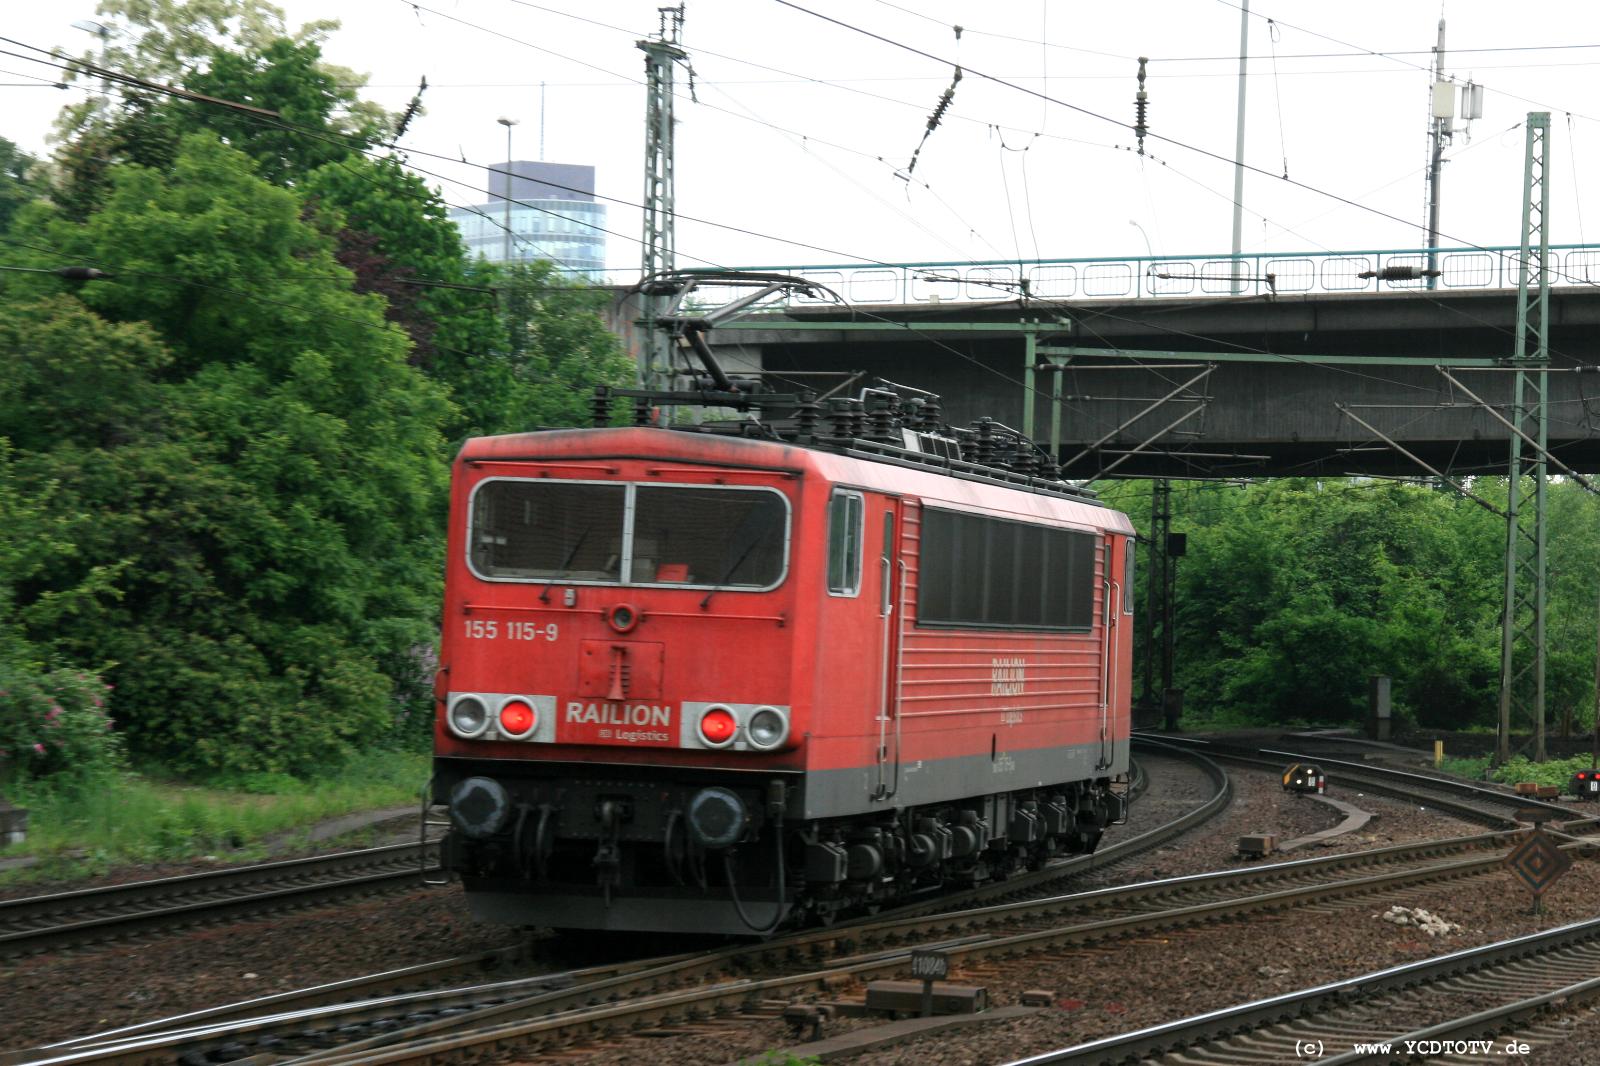  Bahnhof Hamburg-Harburg, 18.05.2011, 14:38 155 115-9 Solo Richtung Stade/Hafen 